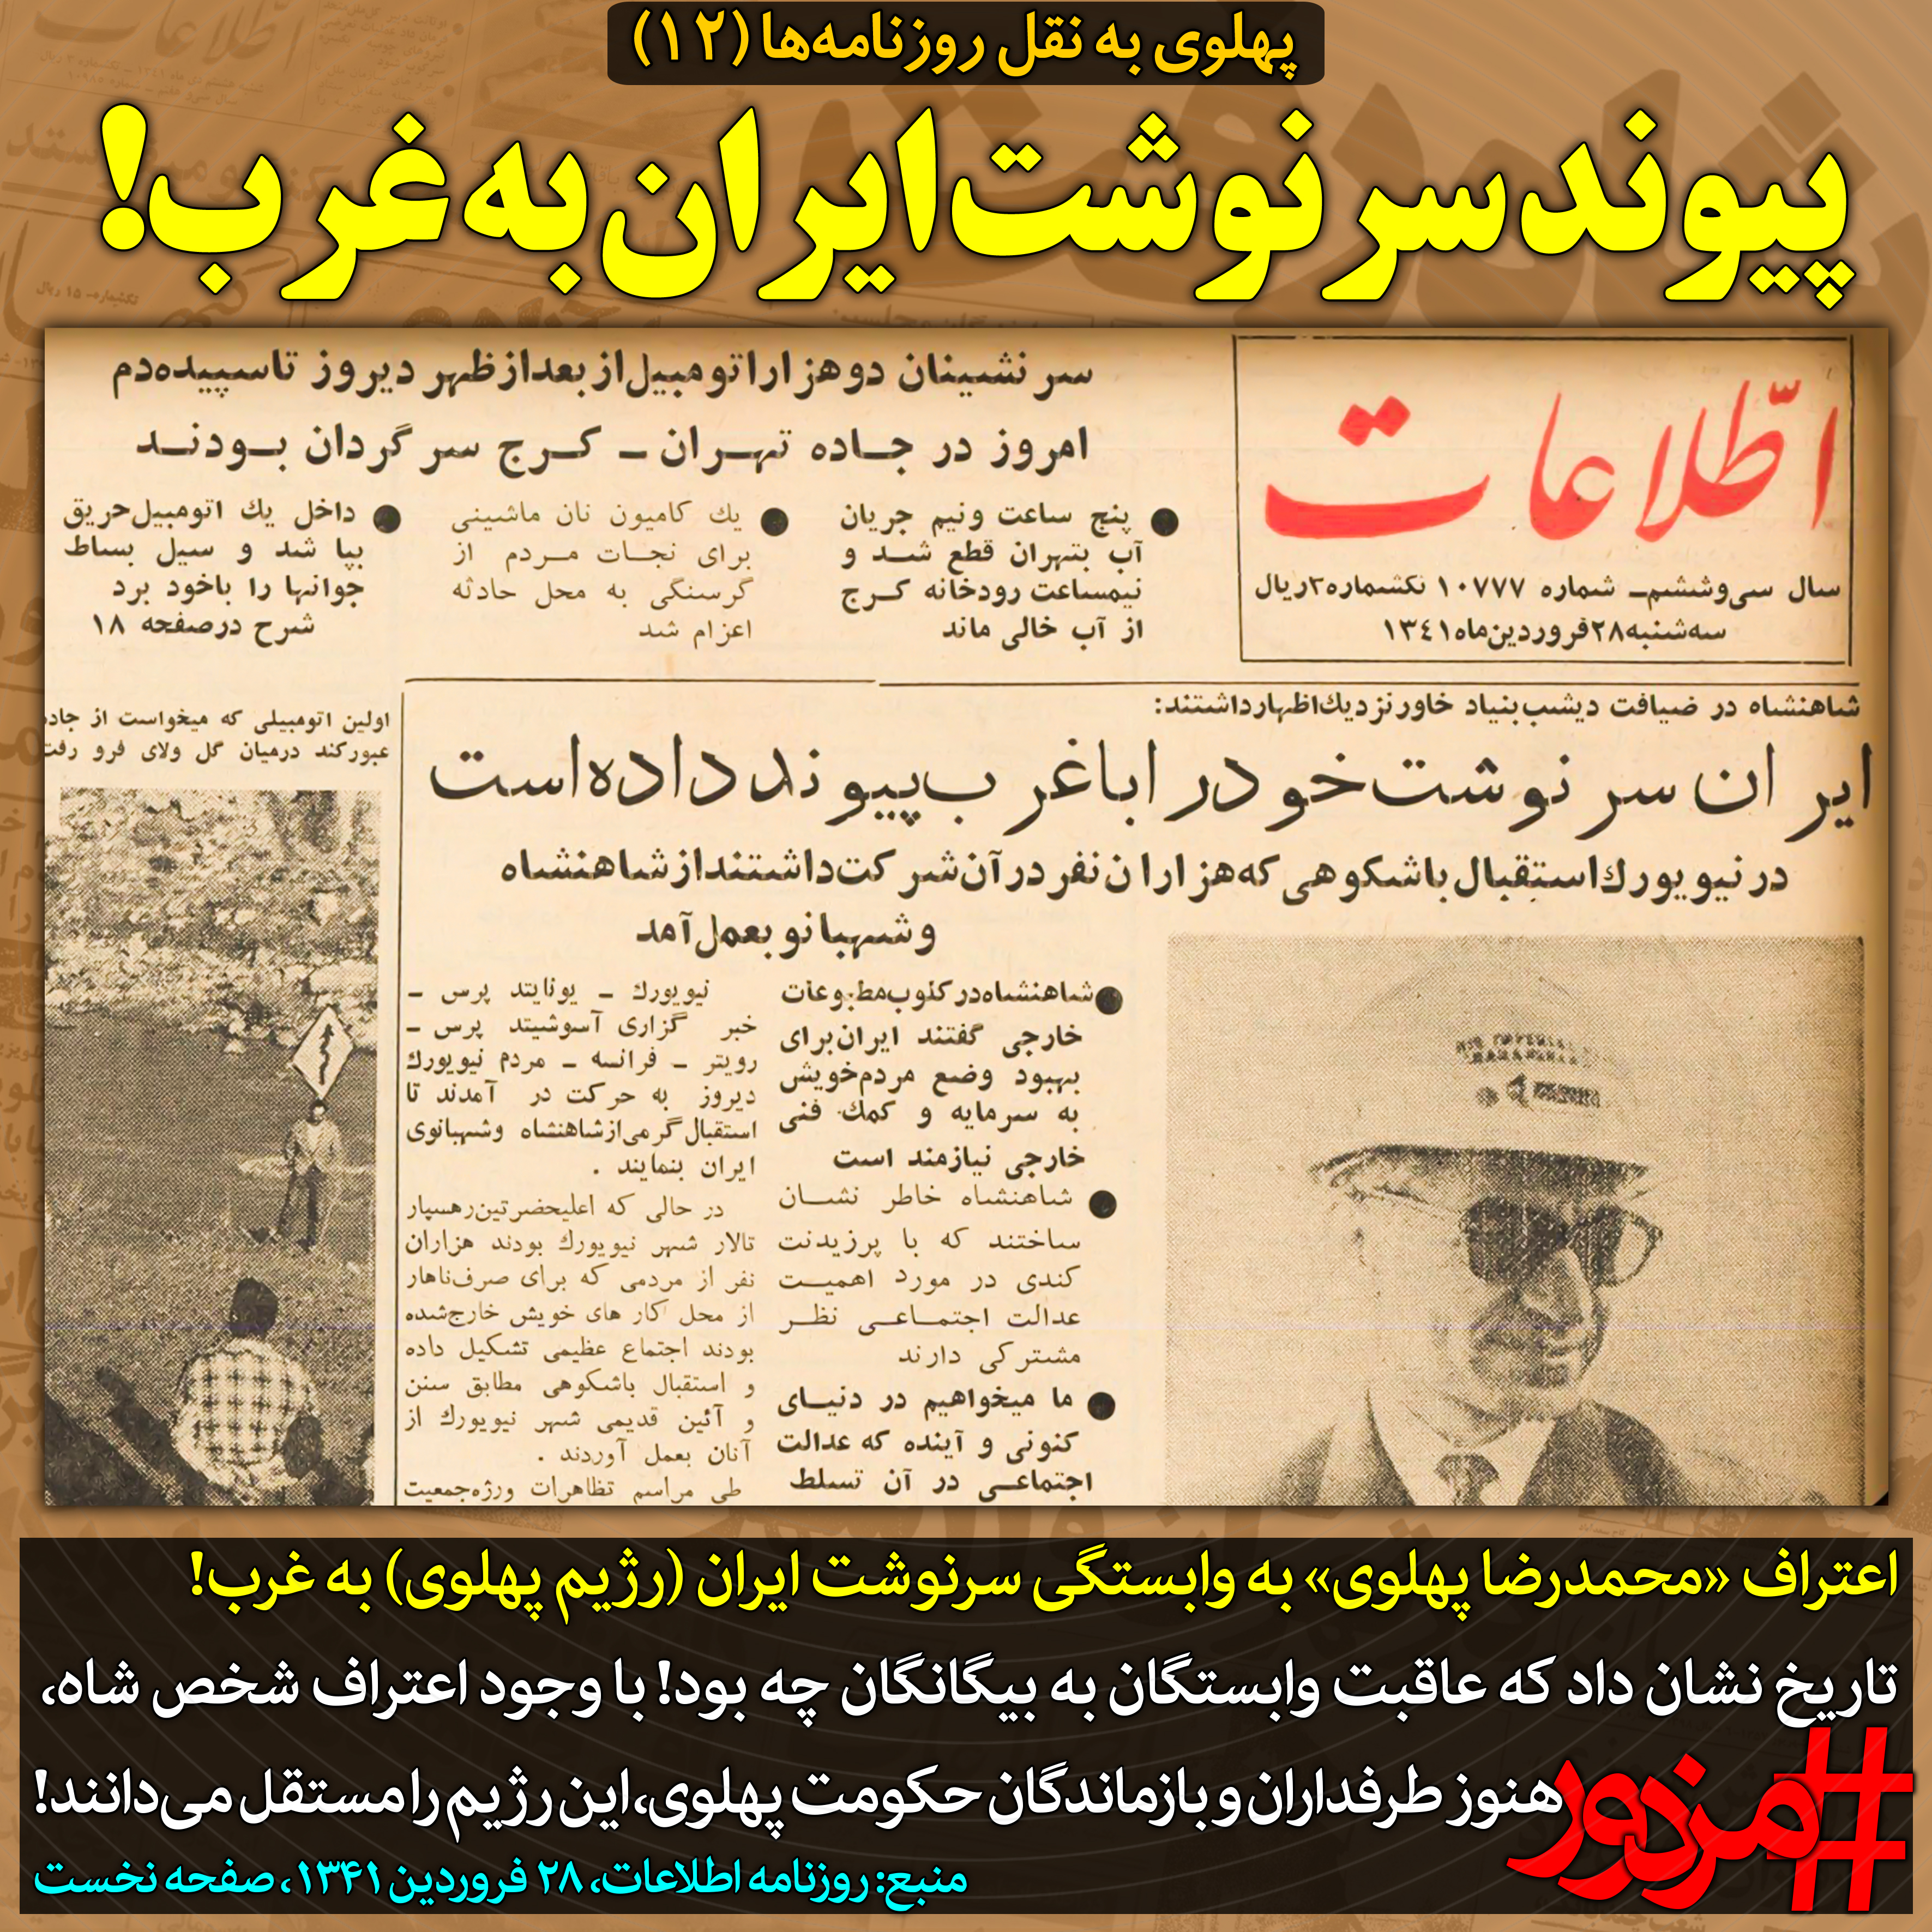 ۳۷۳۷ - پهلوی به نقل روزنامه ها (۱۲): پیوند سرنوشت ایران به غرب!